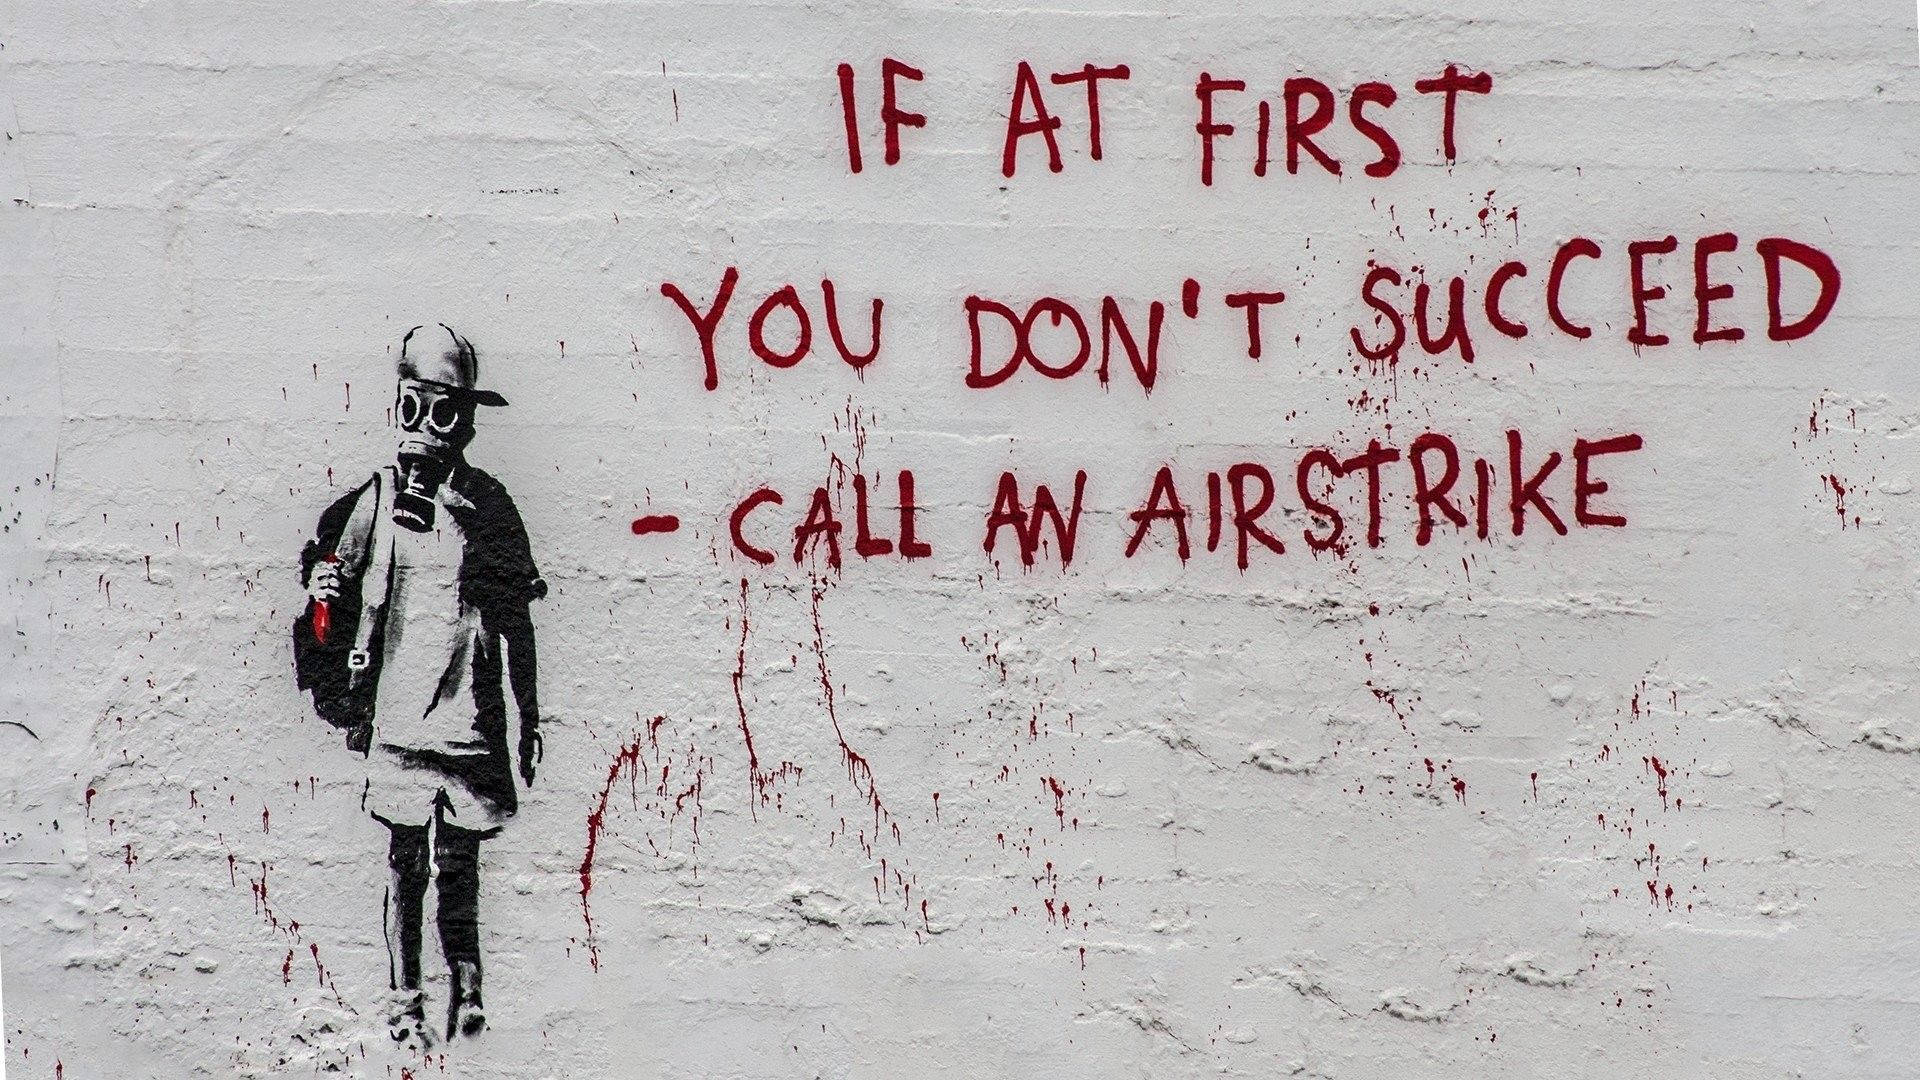 Banksy Airstrike Graffiti